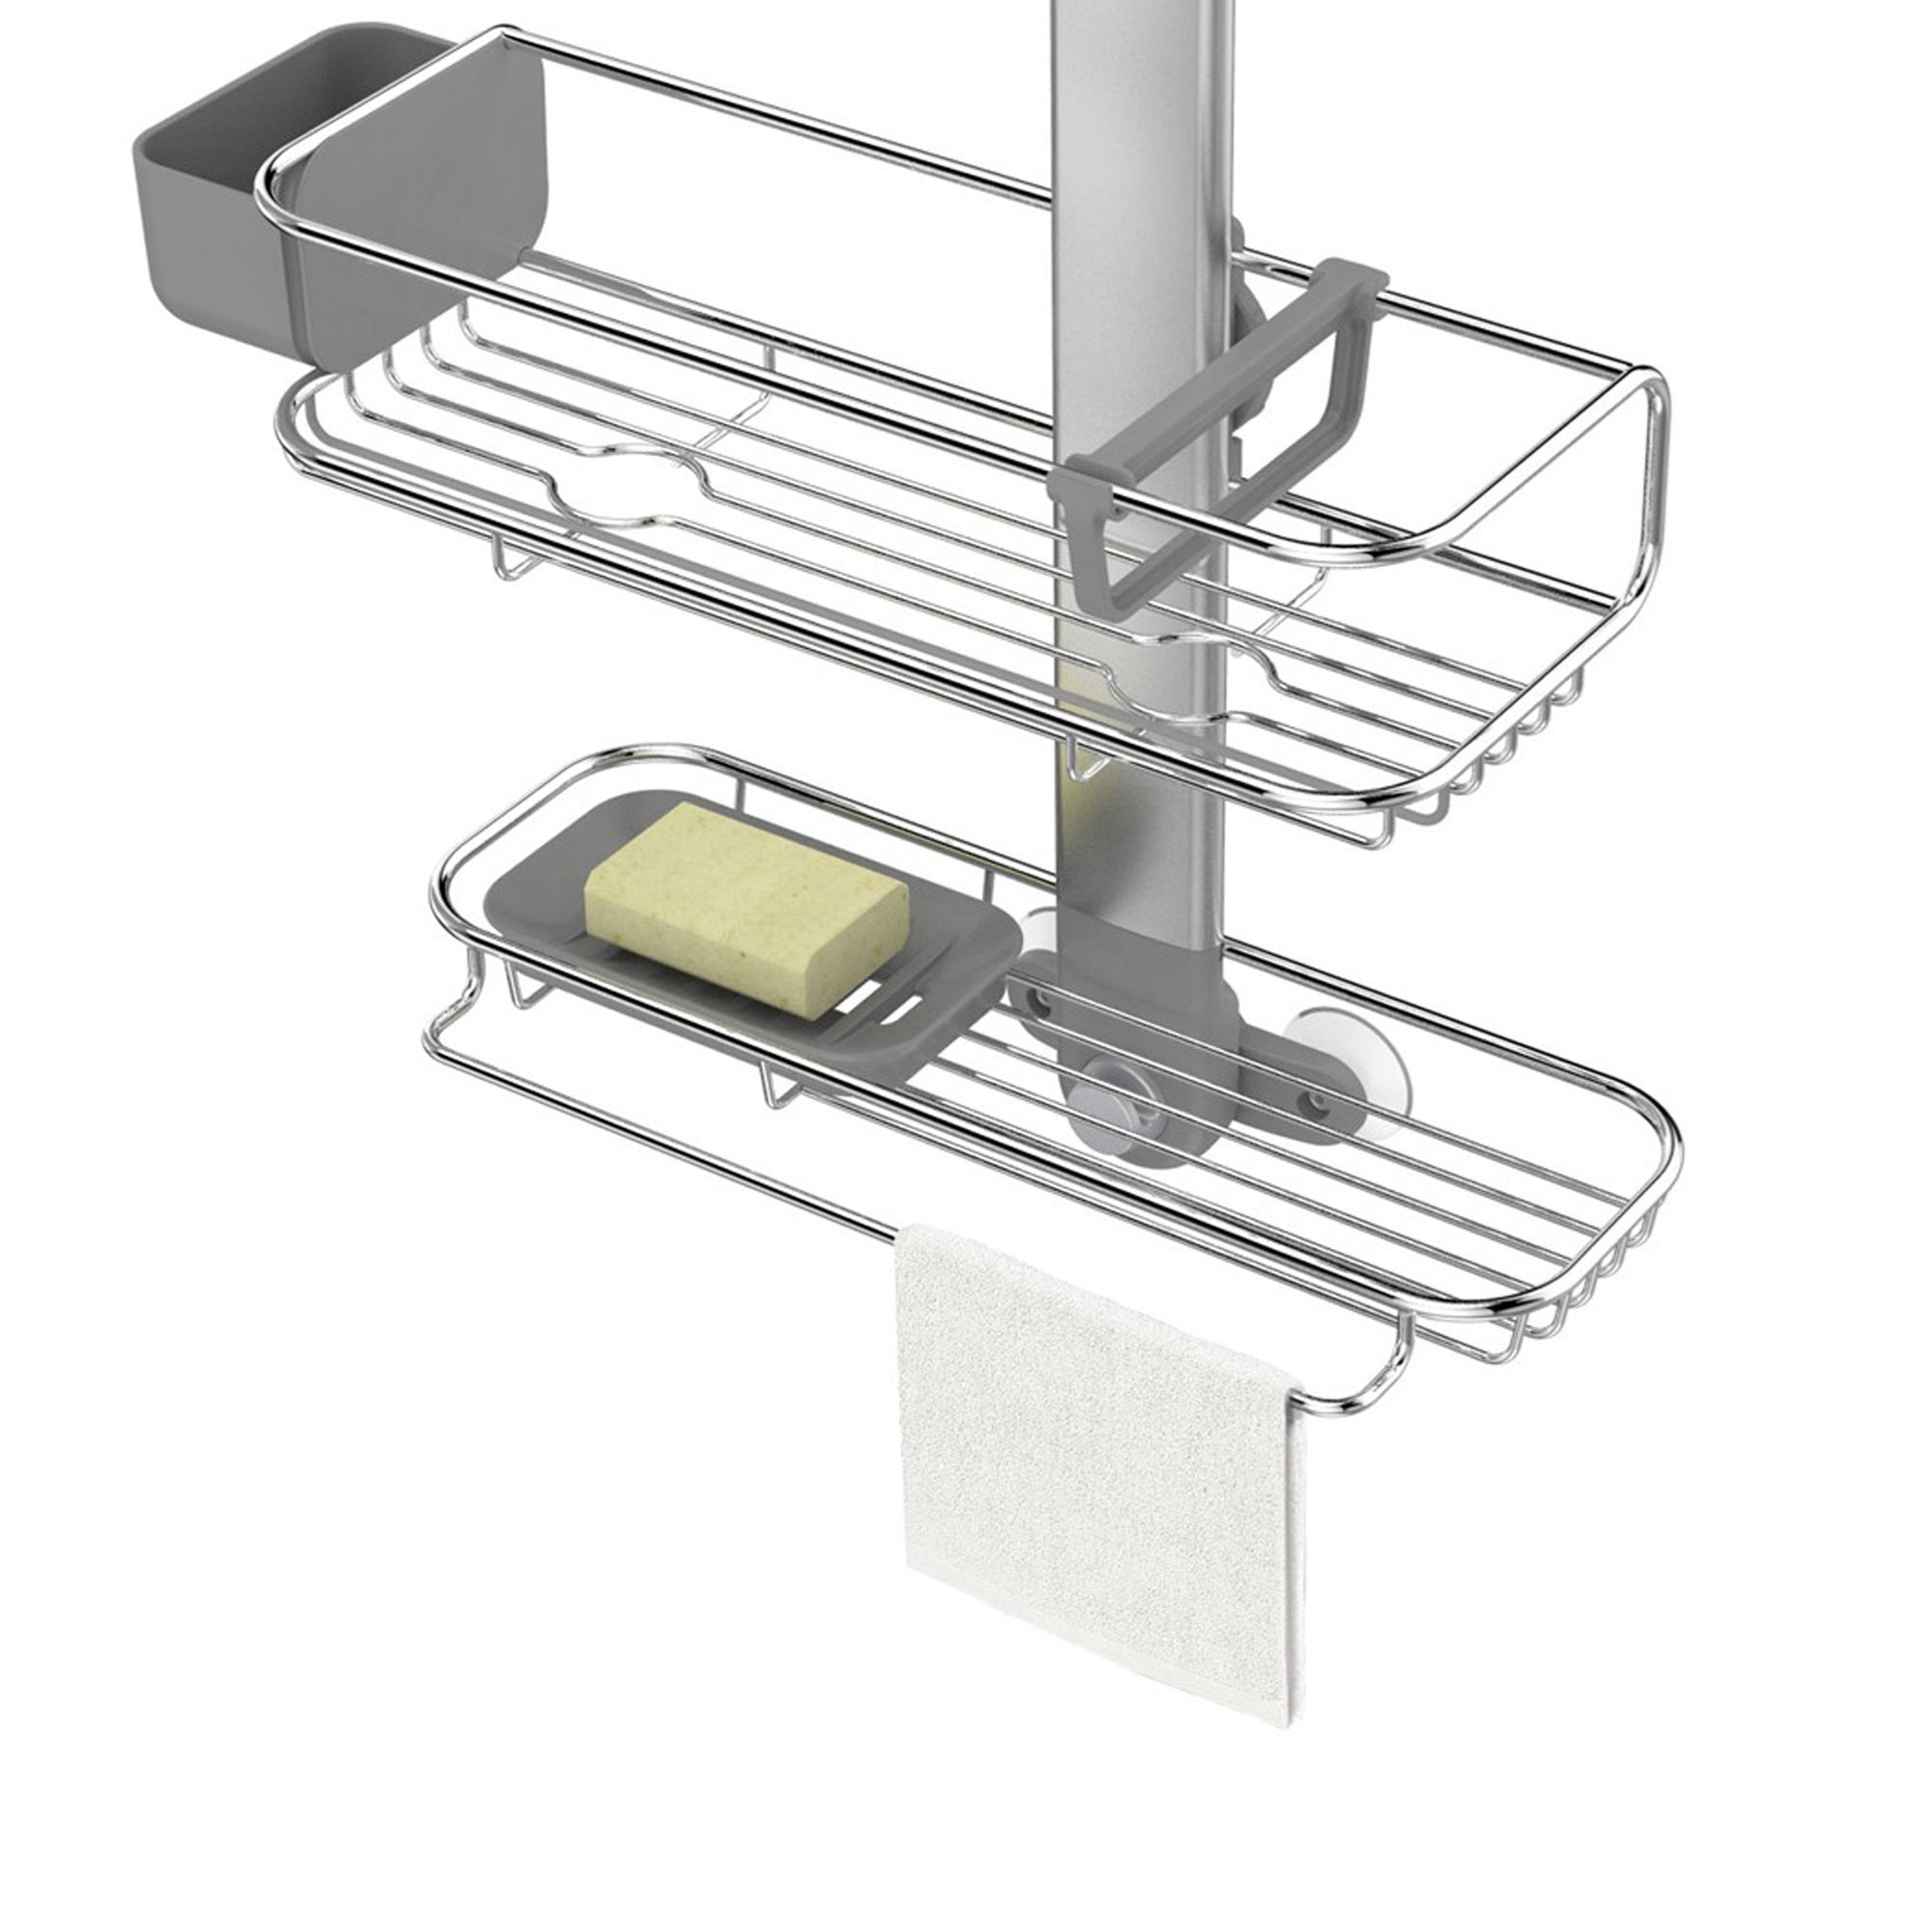 Simplehuman Shower shelves on an adjustable stand - BT1062